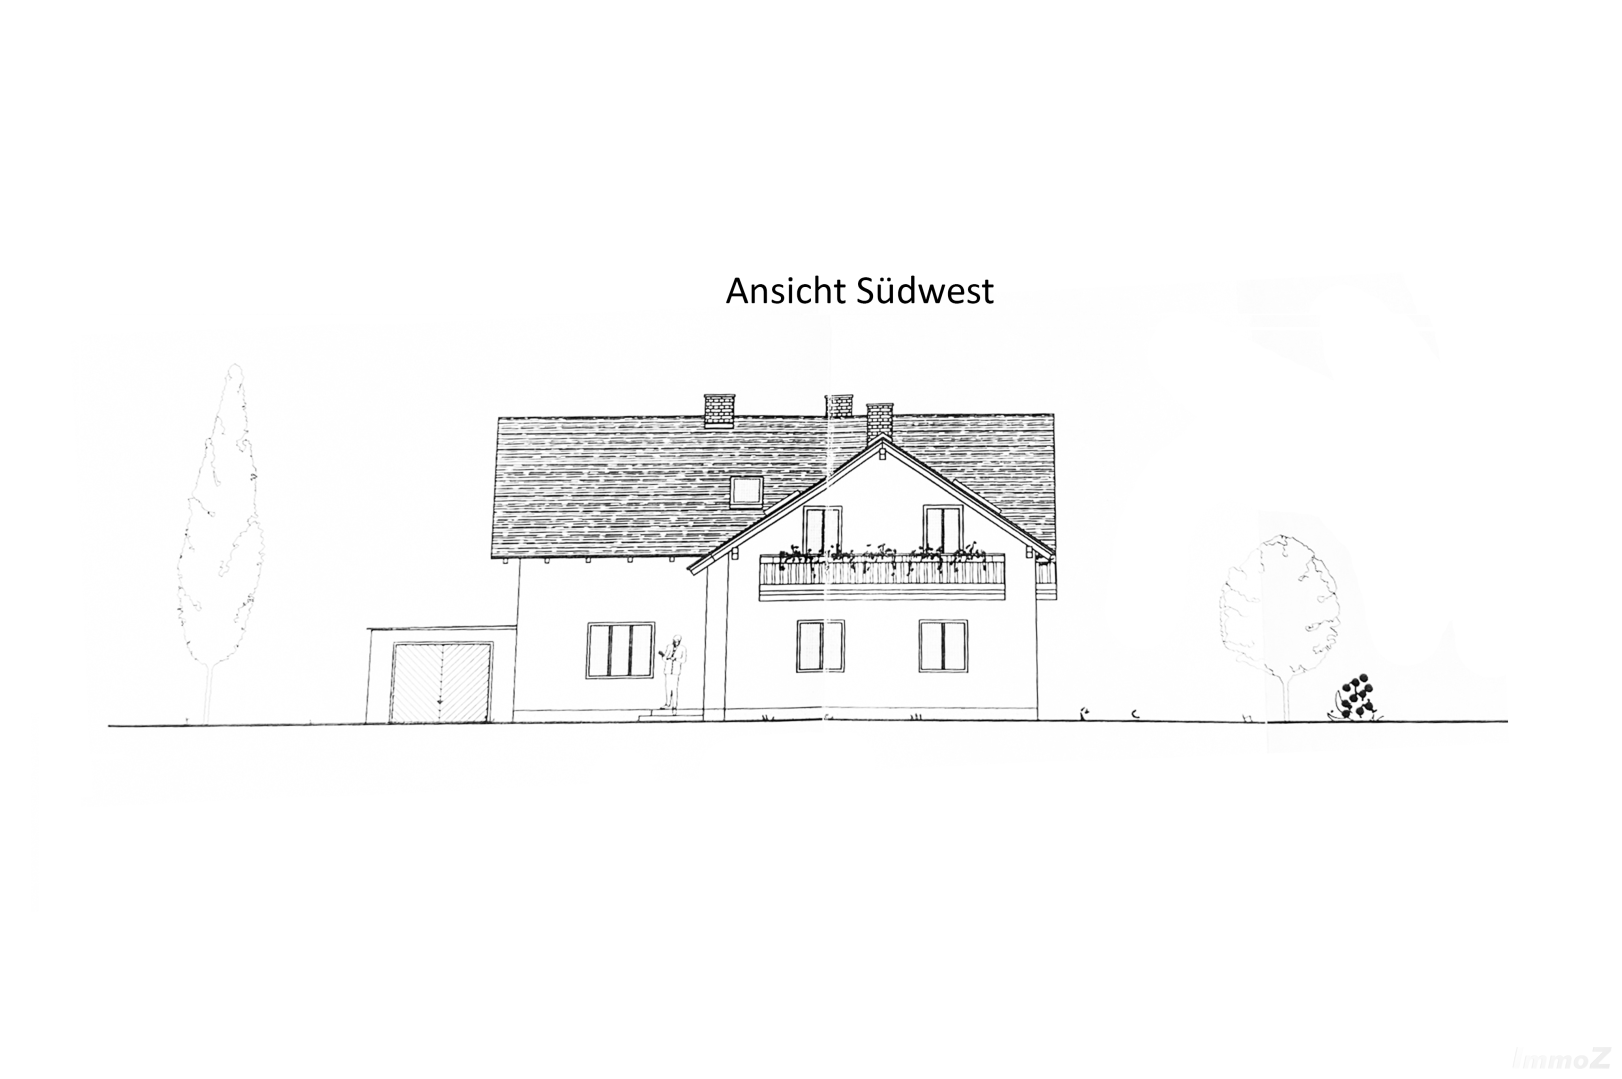 Zinshaus/Renditeobjekt/Gewerbeobjekt zu kaufen: Judendorfer Straße 70, 8112 Gratwein - Ansicht Südwest